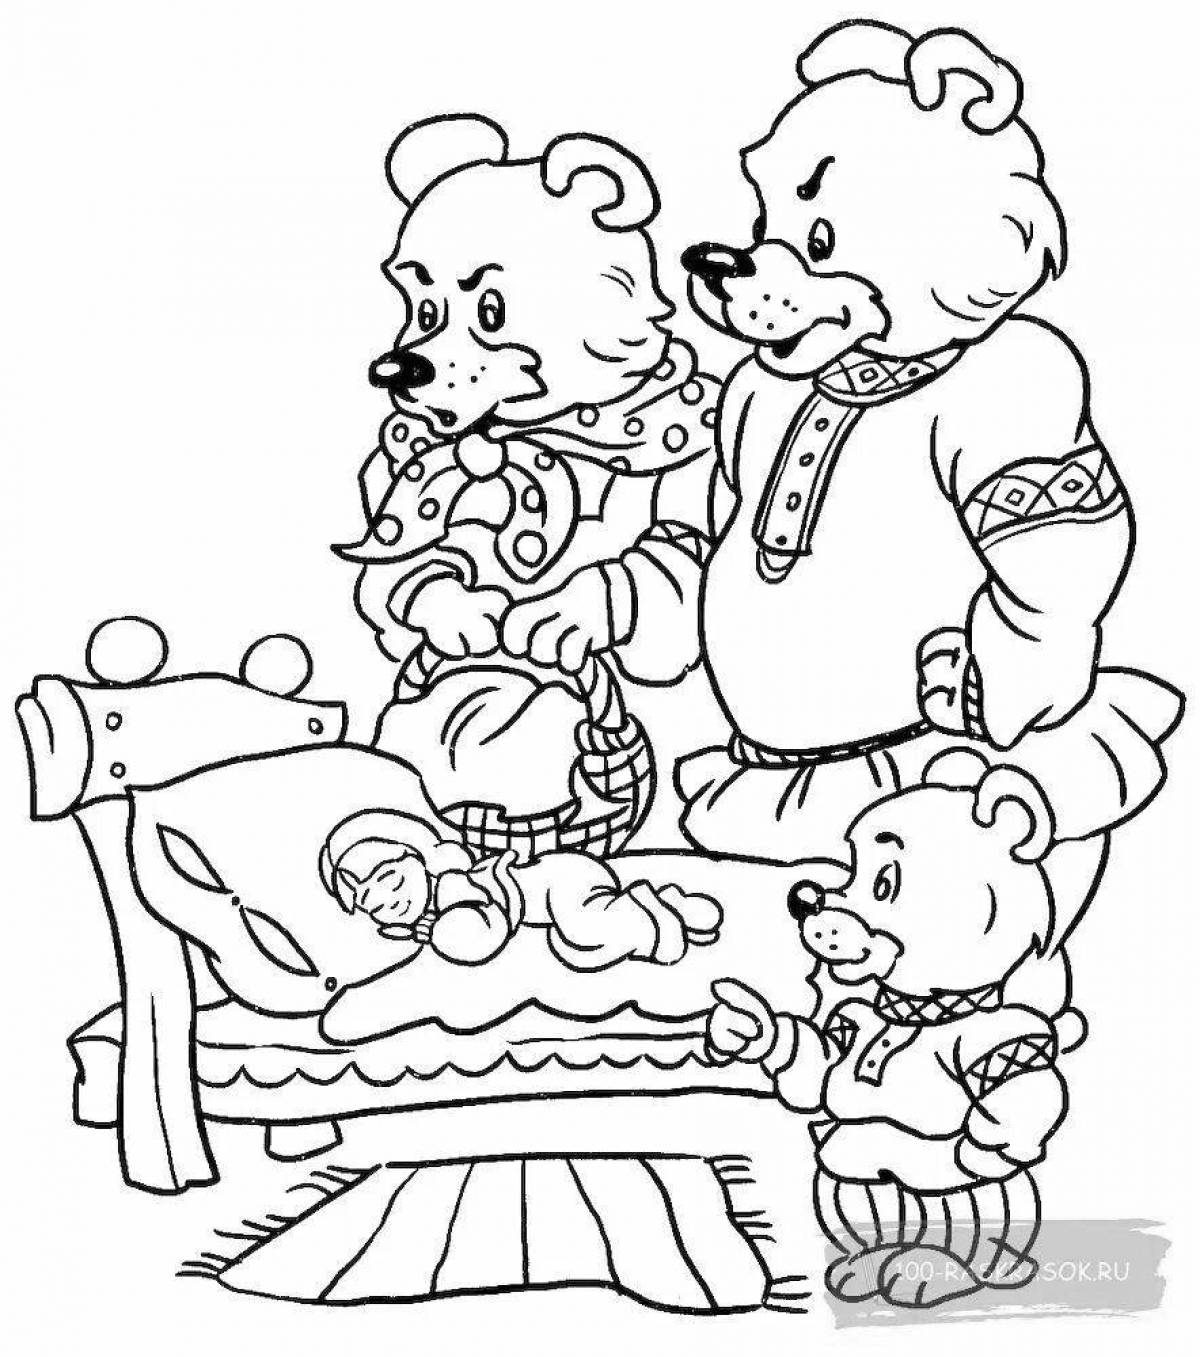 Увлекательная раскраска «3 медведя» для подростков